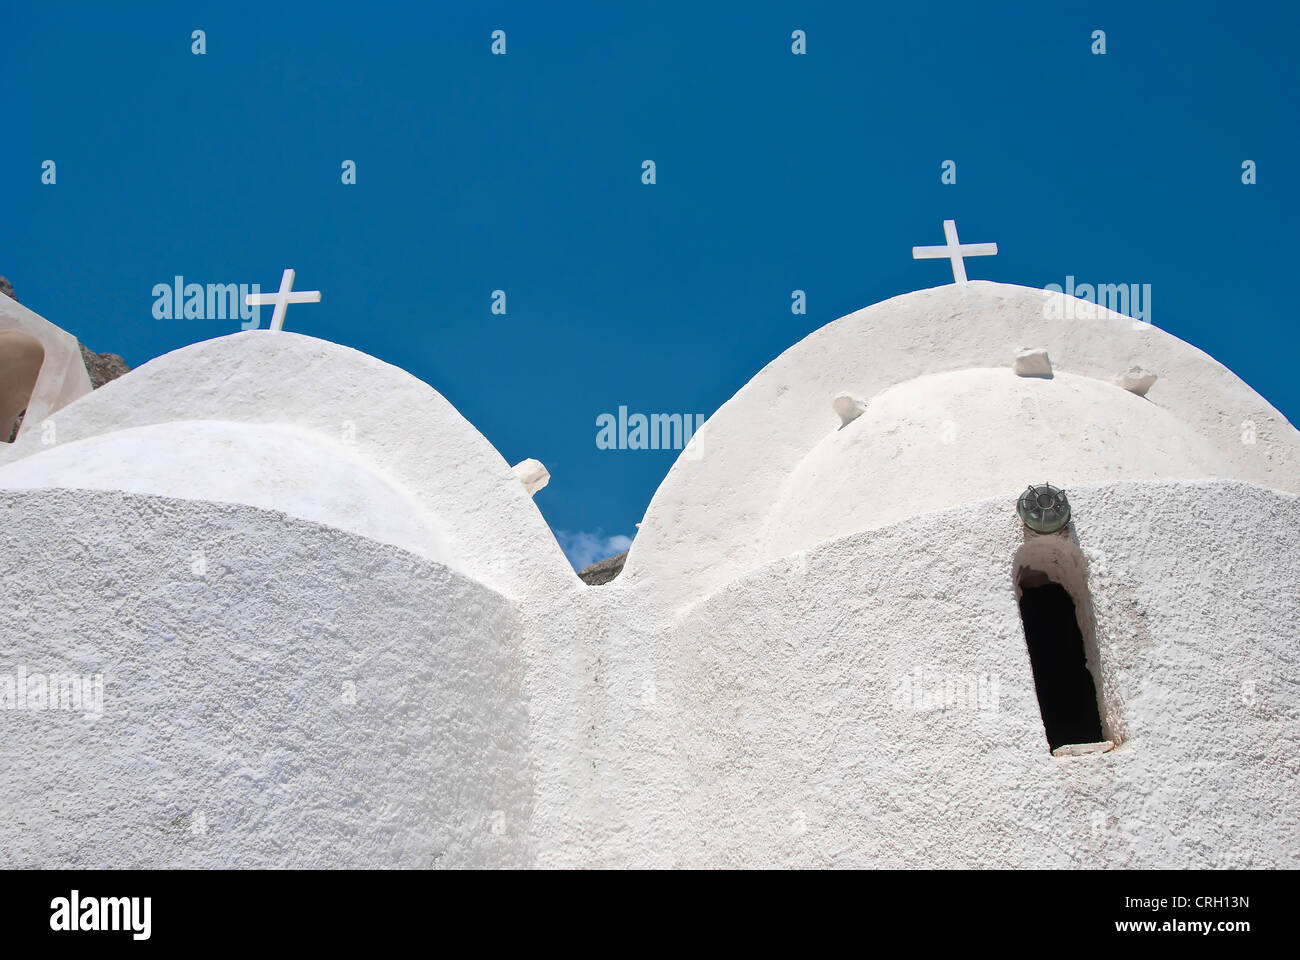 Die Twin-Kuppeln einer mittelalterlichen griechischen Kapelle in Santorini Griechenland Stockfoto